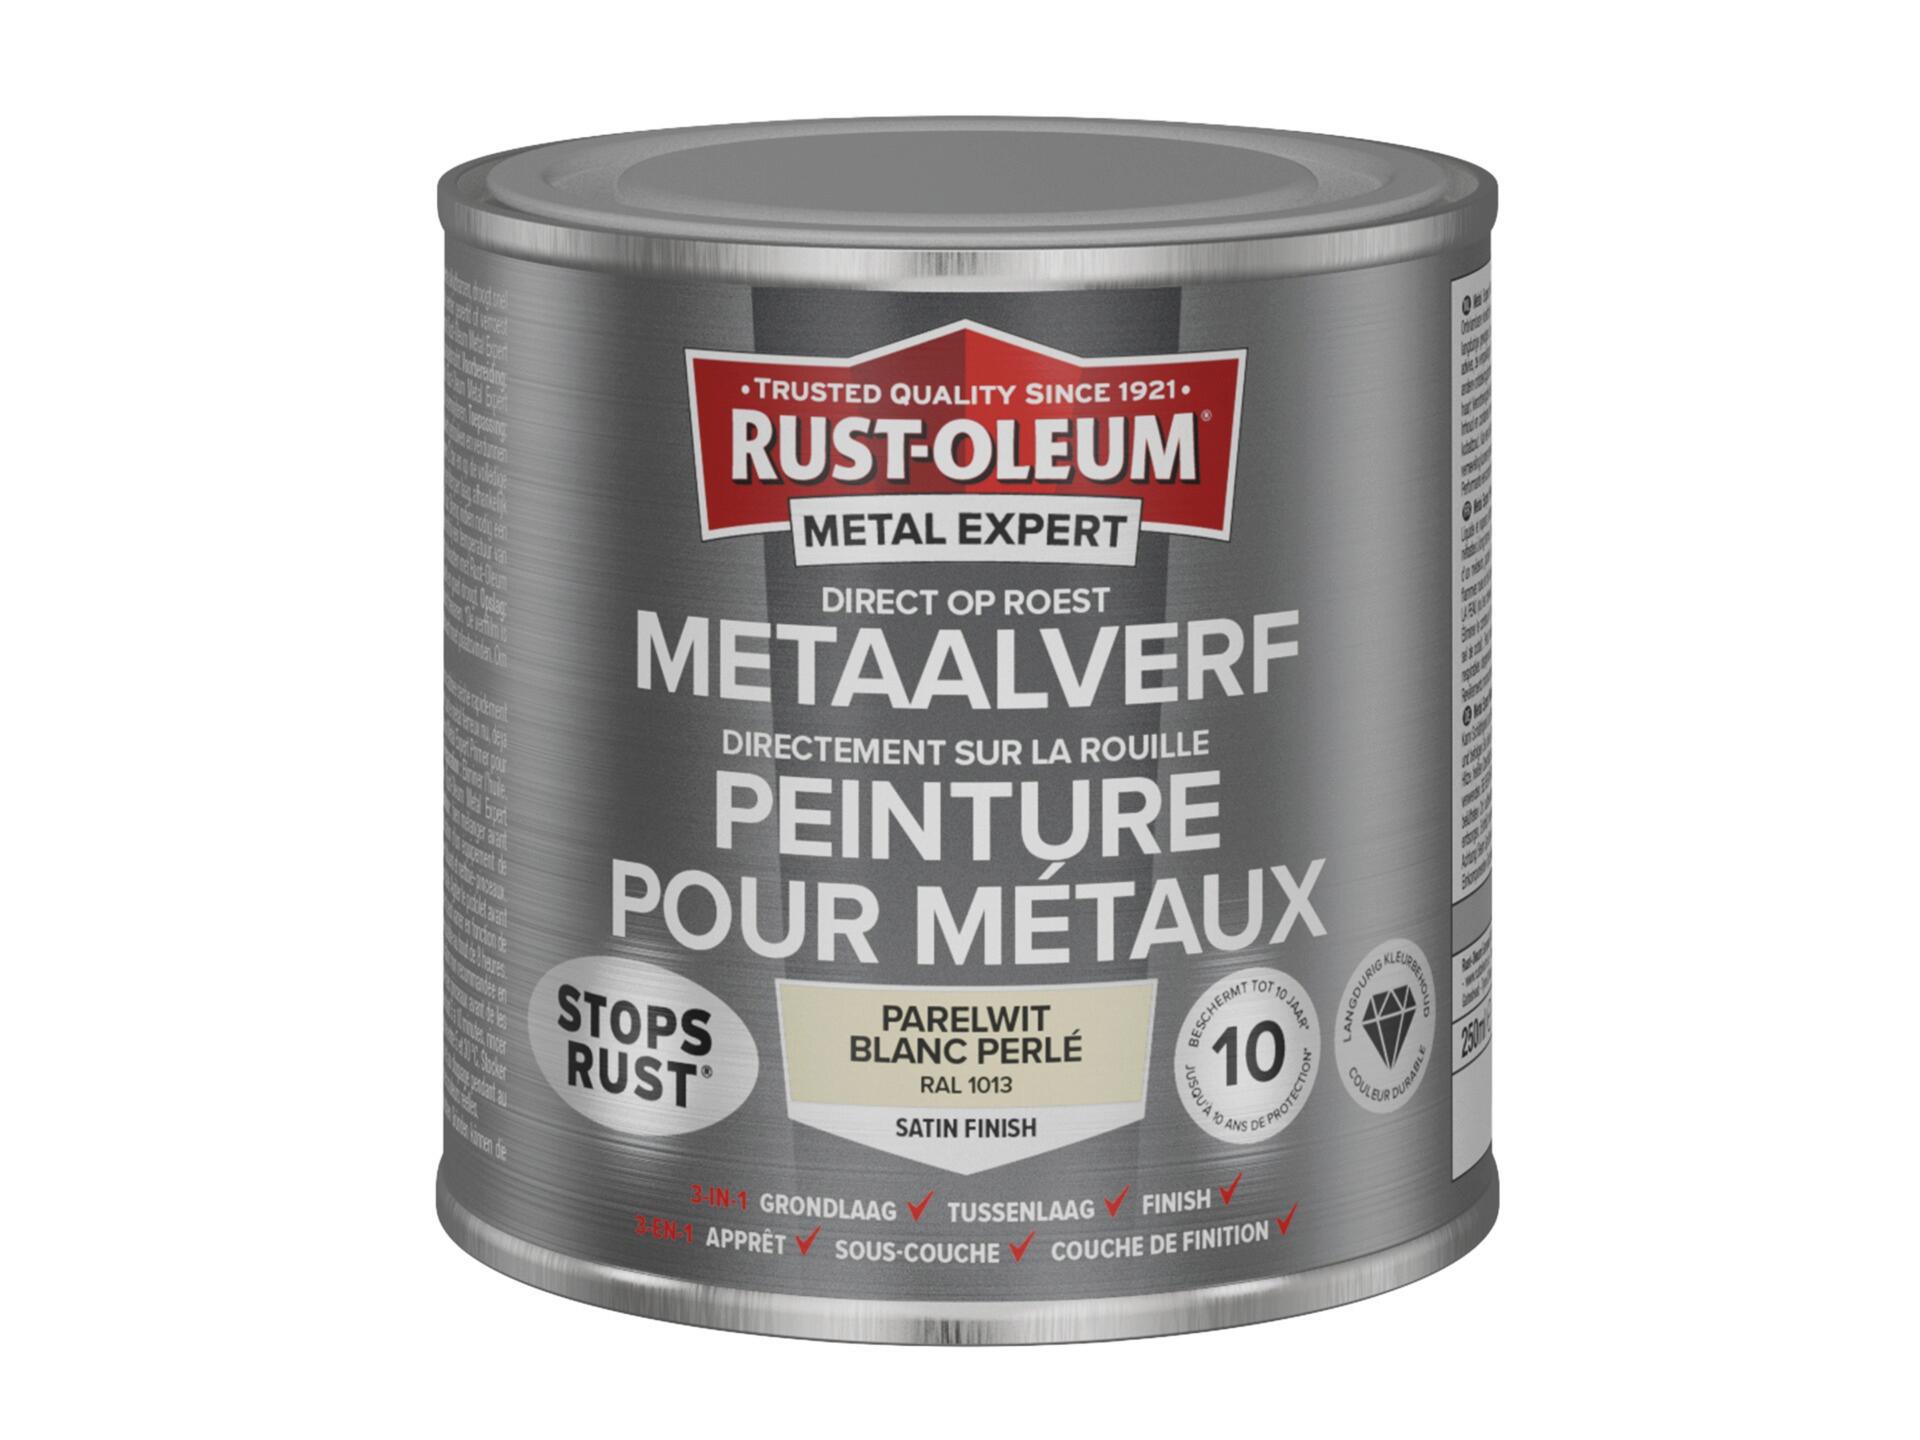 Rust-oleum Metal Expert peinture pour métaux satin 250ml blanc perlé